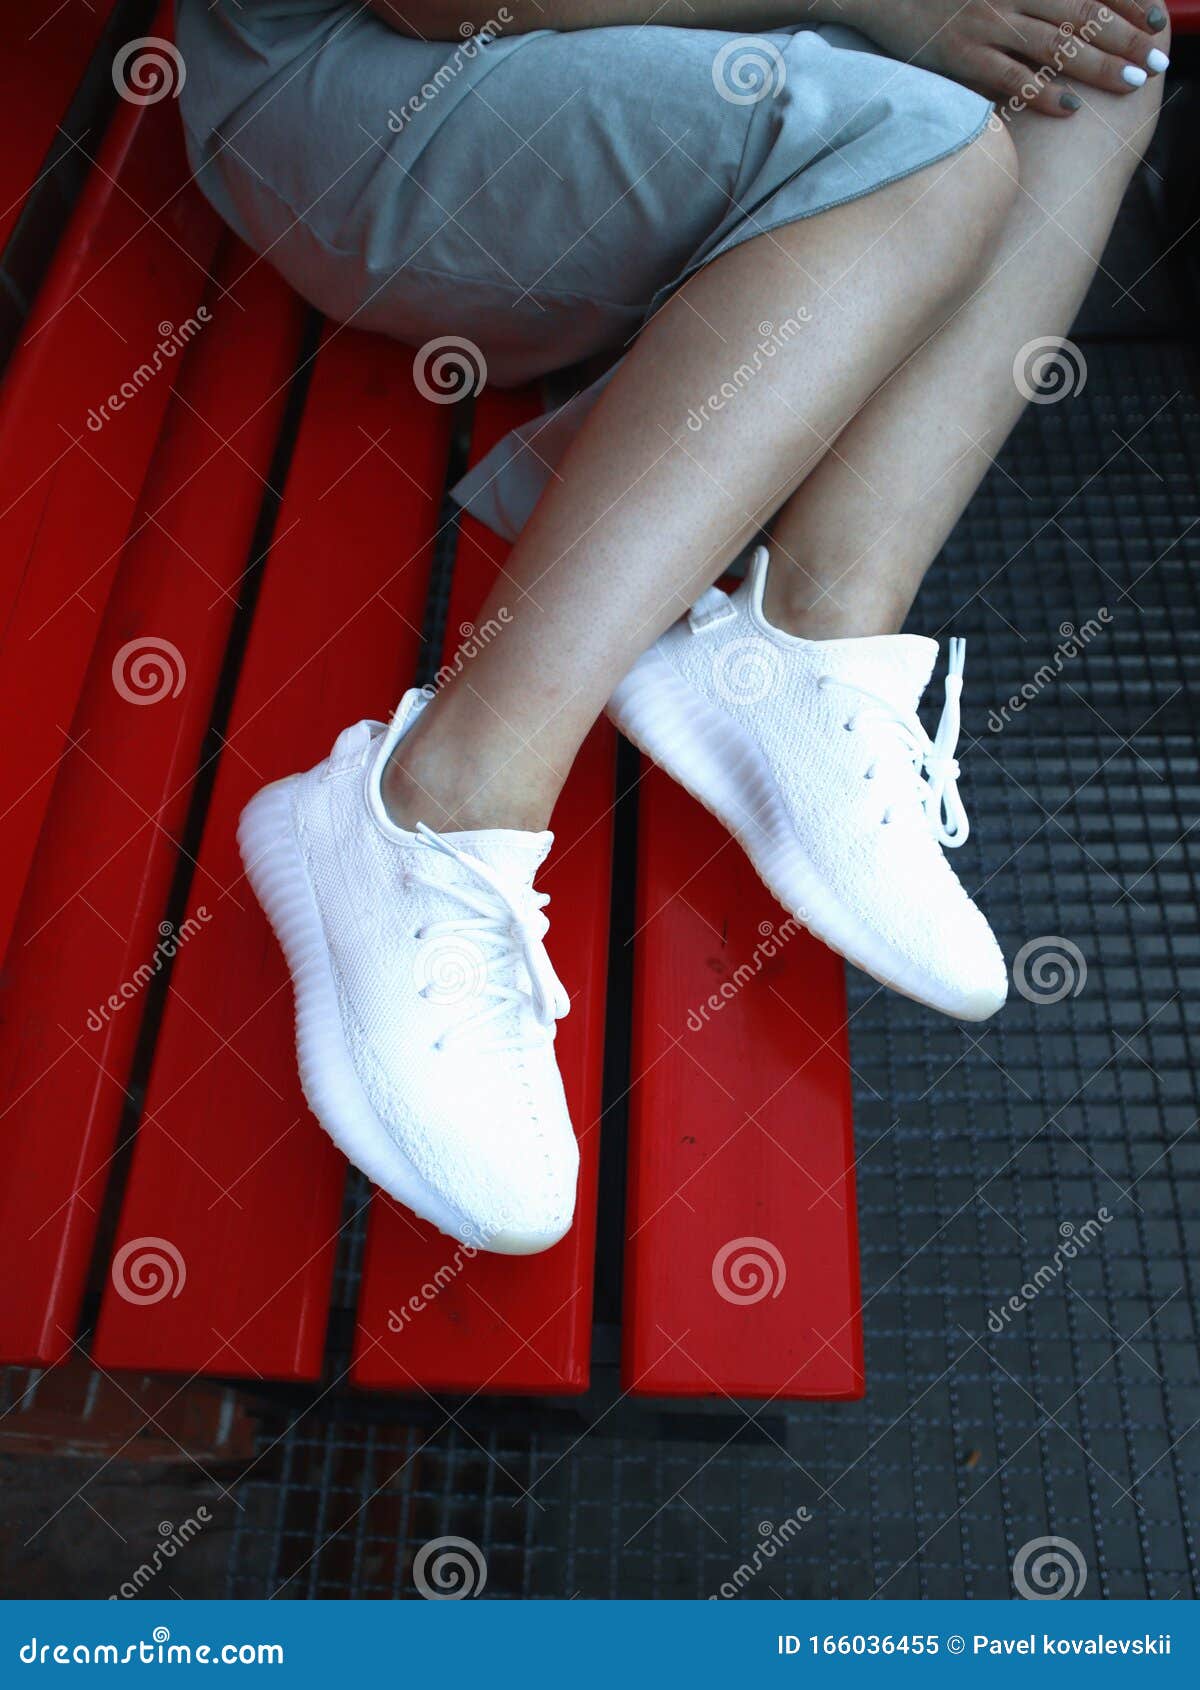 Una Chica Vestida De Zapatillas Yeezy Aumento 350 V2 Imagen editorial Imagen de aislado, muchacha: